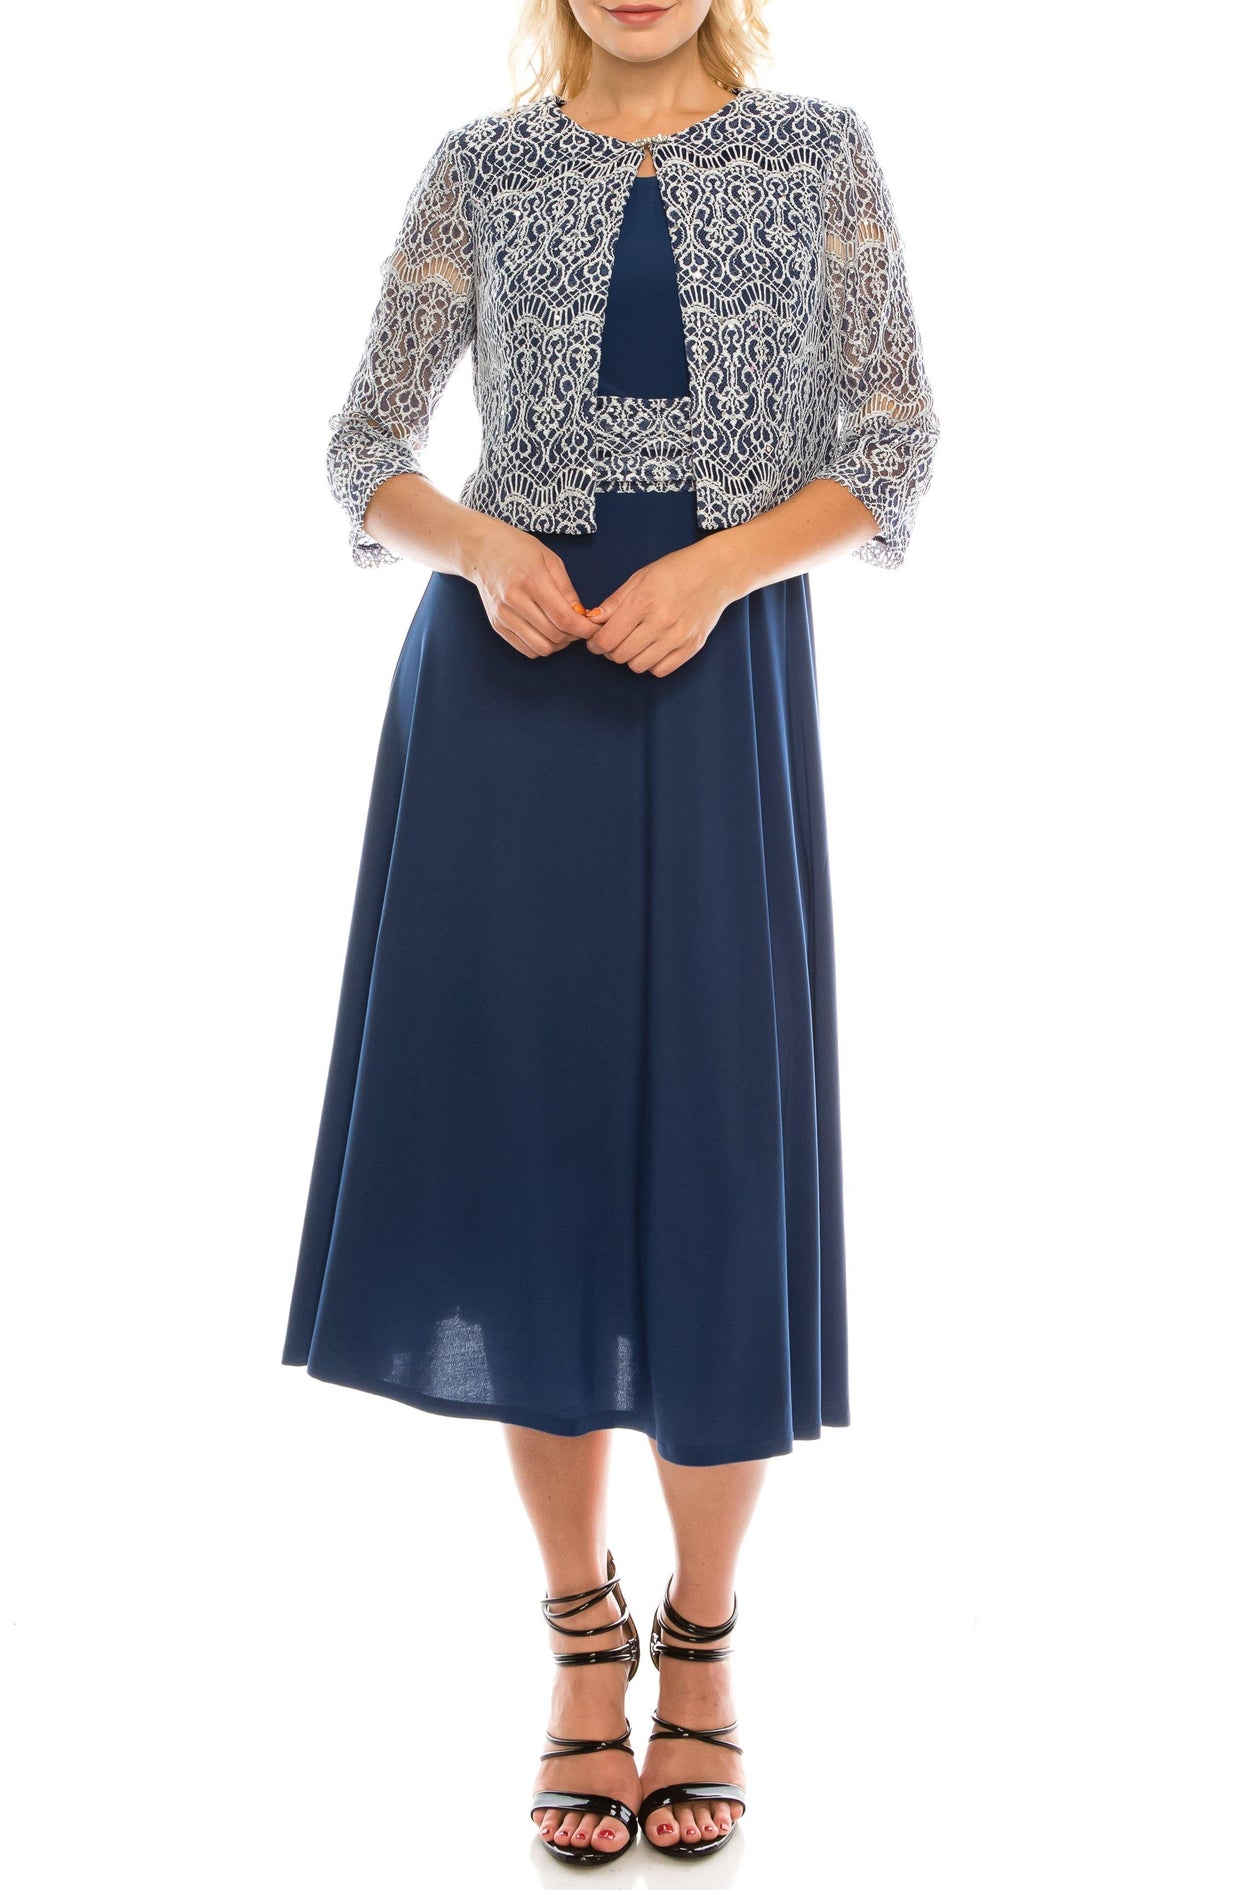 BLUE Jessica Howard Short 2 Piece Set Jacket Dress for $99.99 – The Dress  Outlet